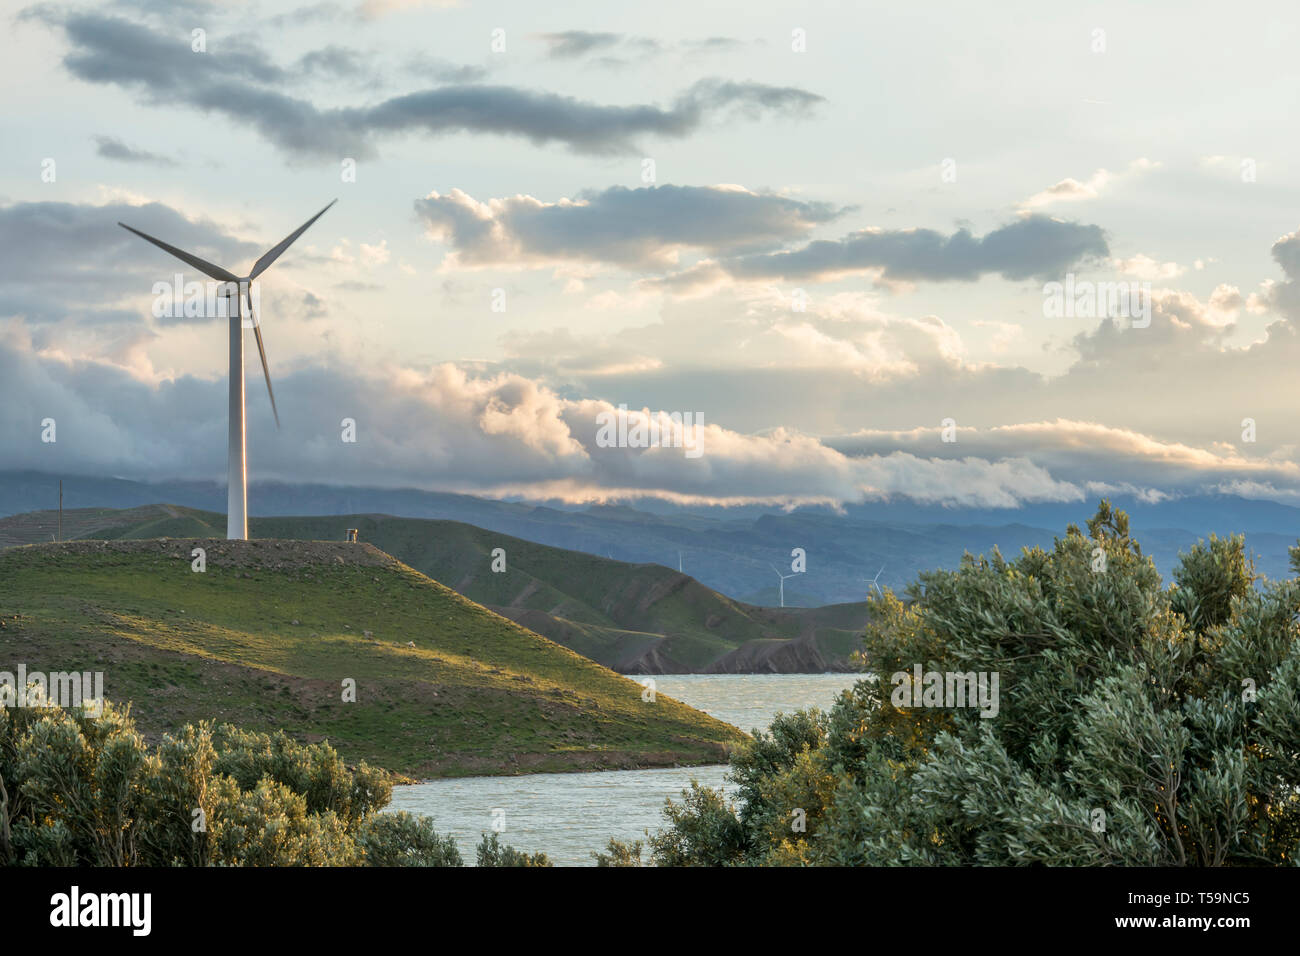 La turbine de vent sur la colline en face de ciel nuageux, la production d'électricité respectueuse de l'environnement Banque D'Images